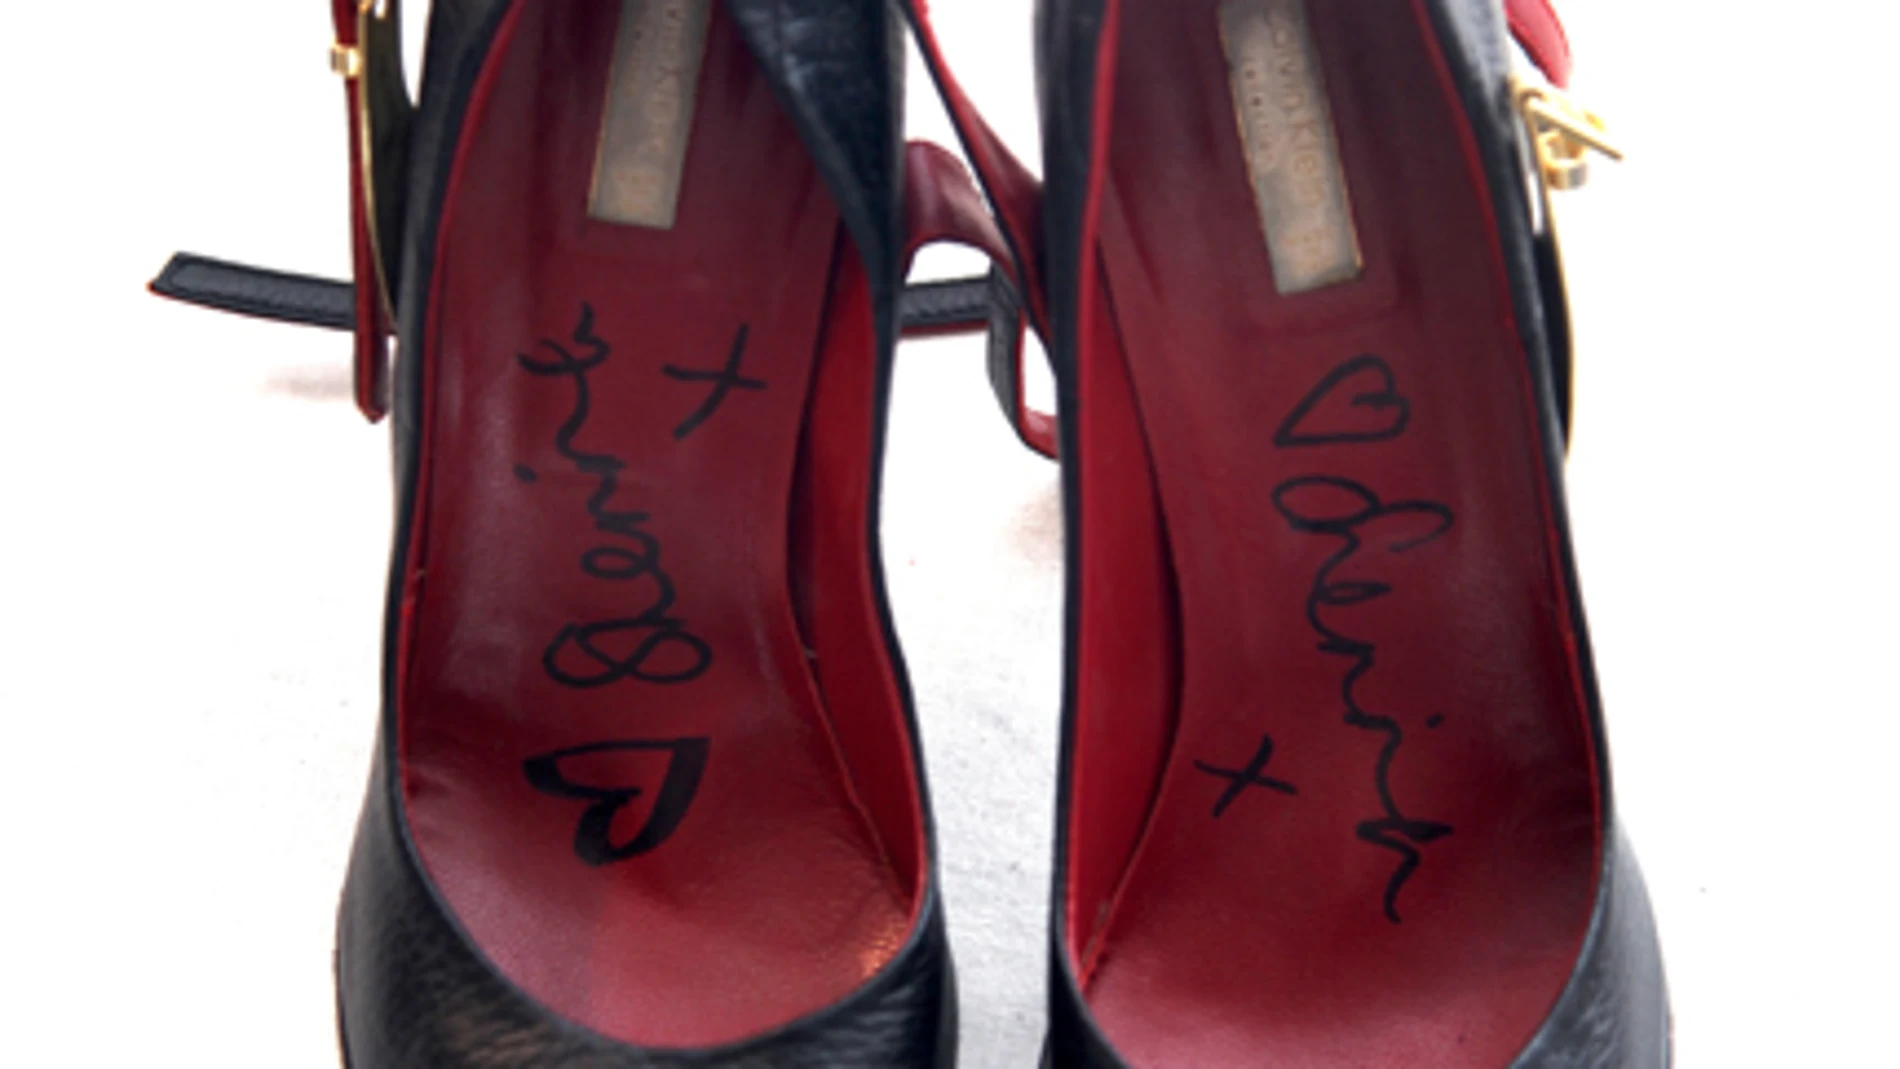 Zapatos Calvin Klenin de Sienna Miller.